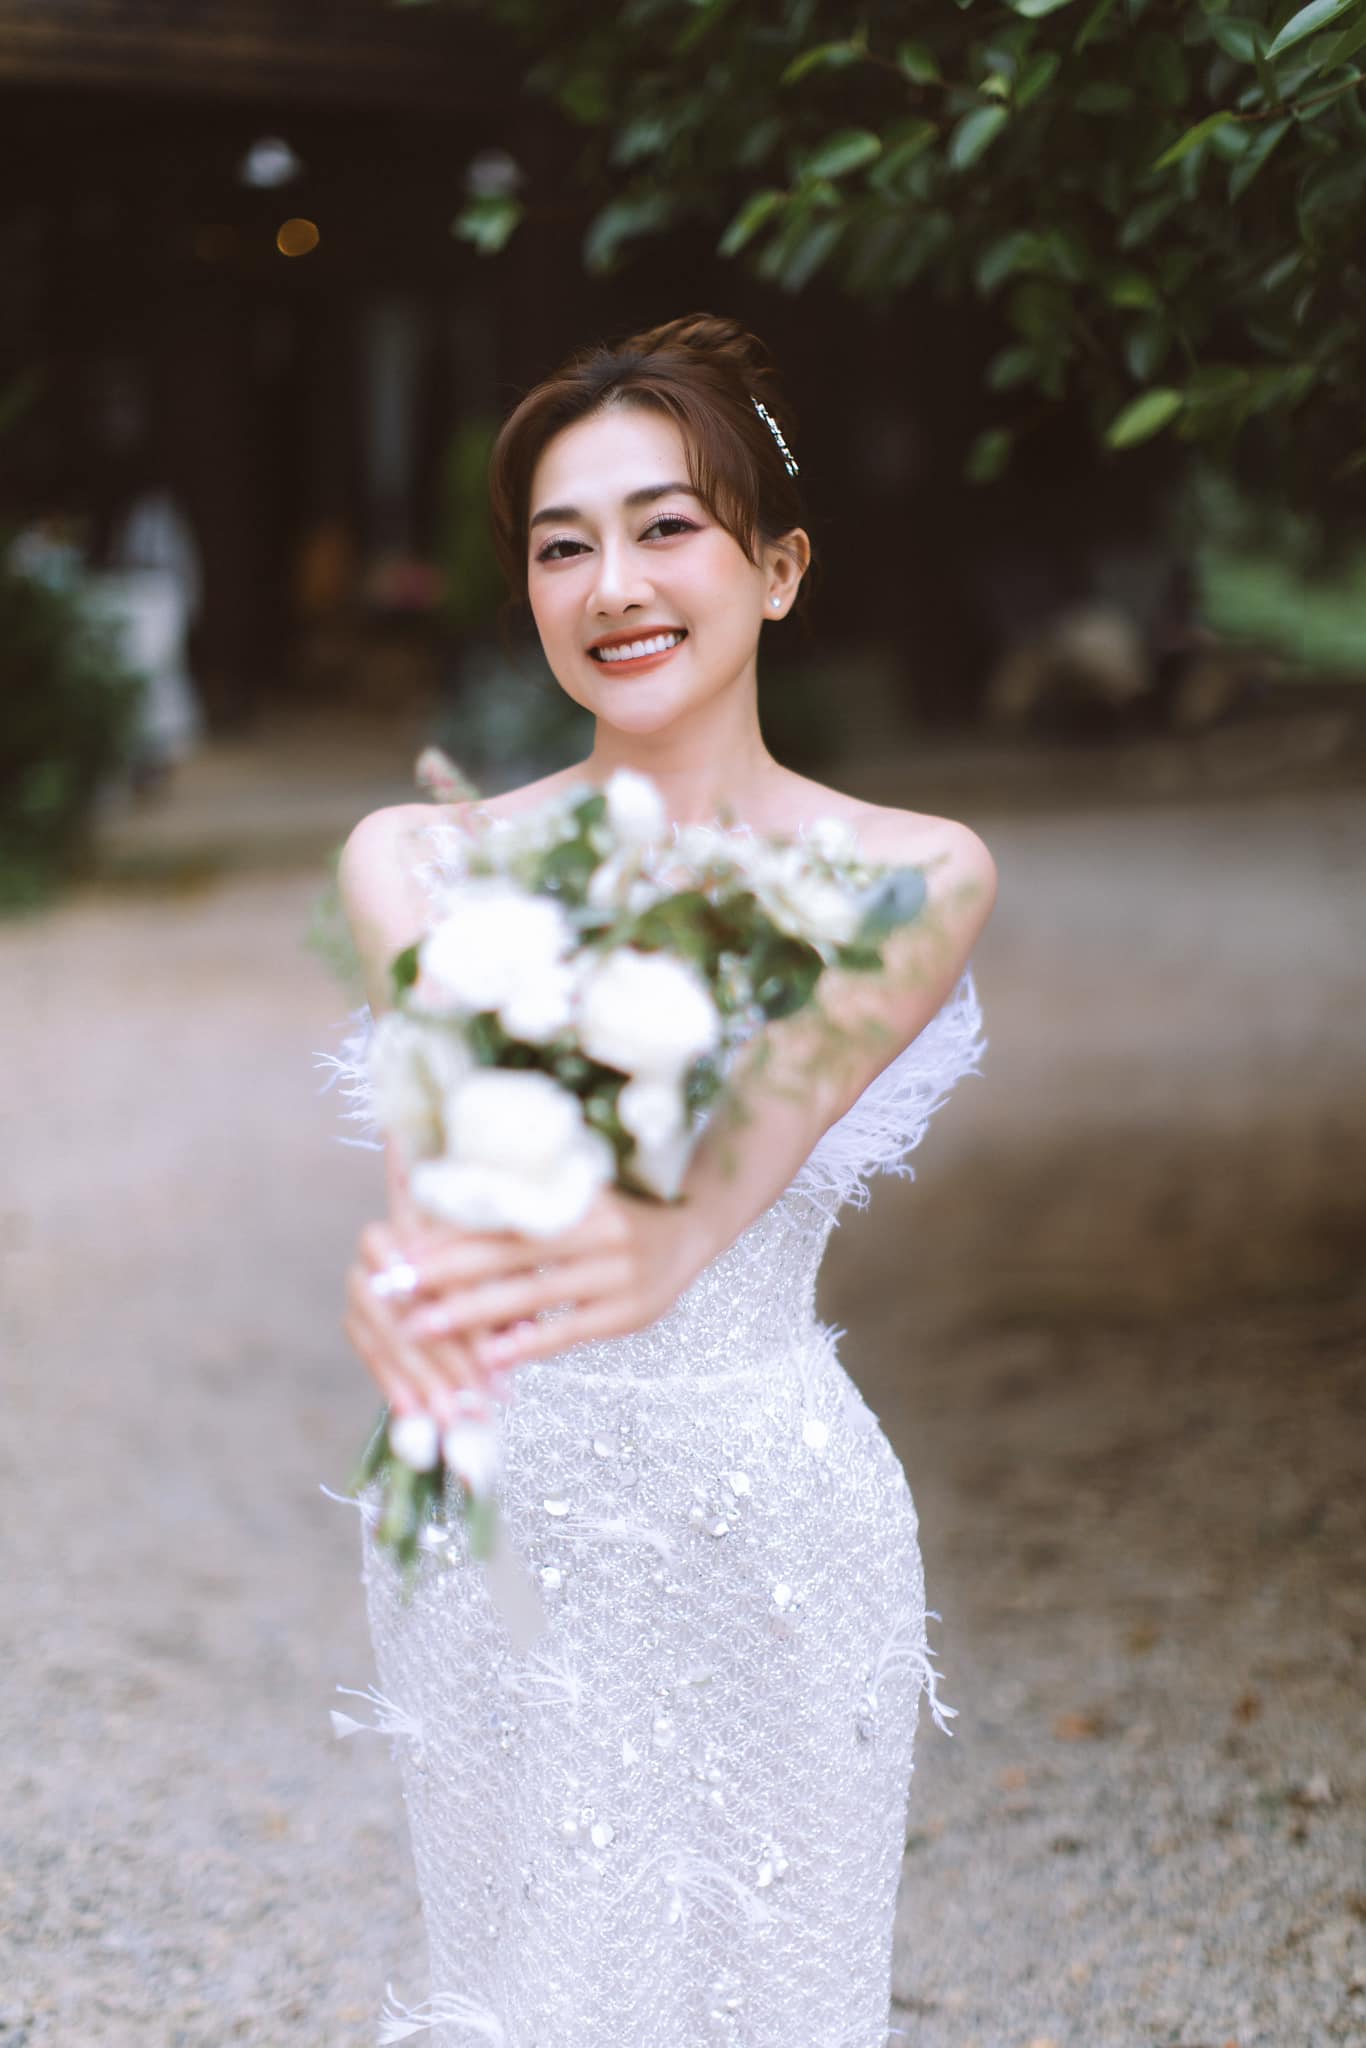 Vừa xong đám cưới Puka, showbiz Việt tiếp tục rộn ràng với hôn lễ của cặp đôi diễn ra ở 3 nơi khác nhau - ảnh 3